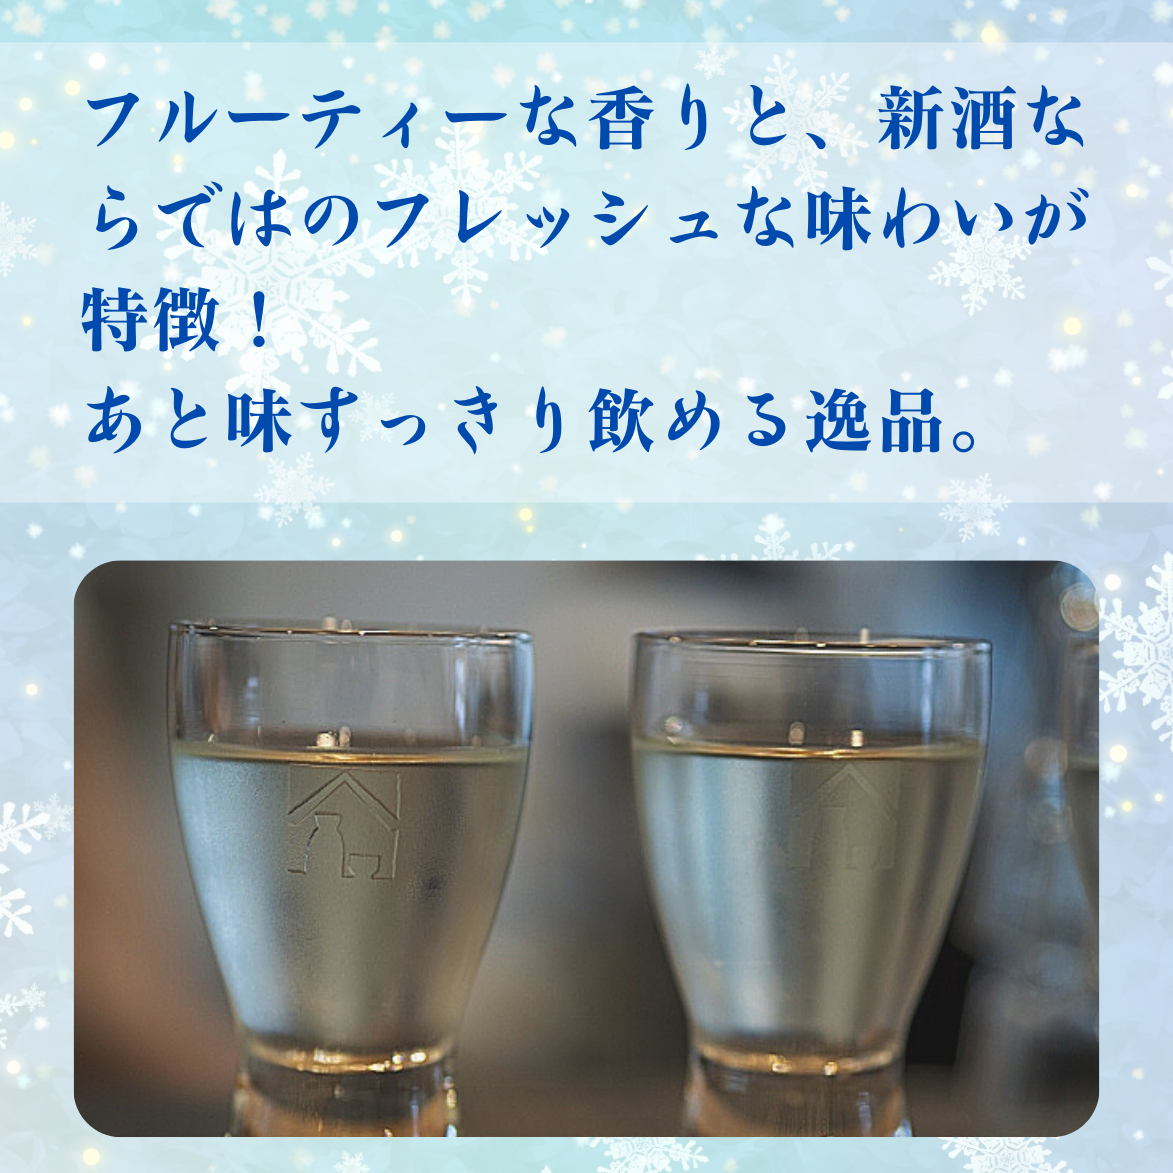 光武 清酒四季シリーズ 冬 日本酒 期間限定 おすすめ 数量限定 純米大吟醸